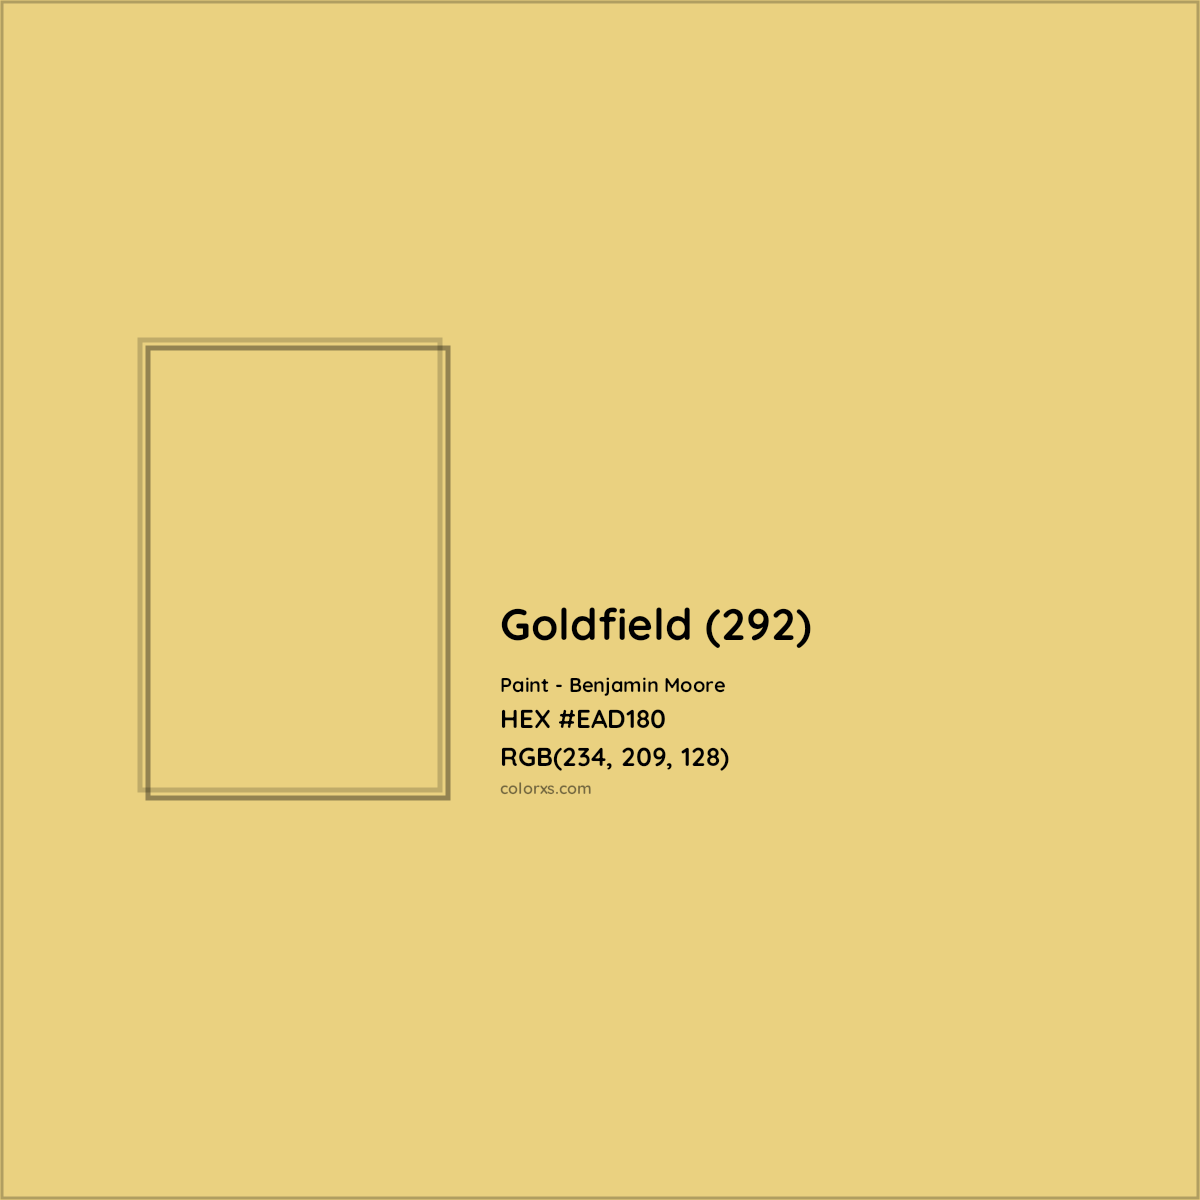 HEX #EAD180 Goldfield (292) Paint Benjamin Moore - Color Code